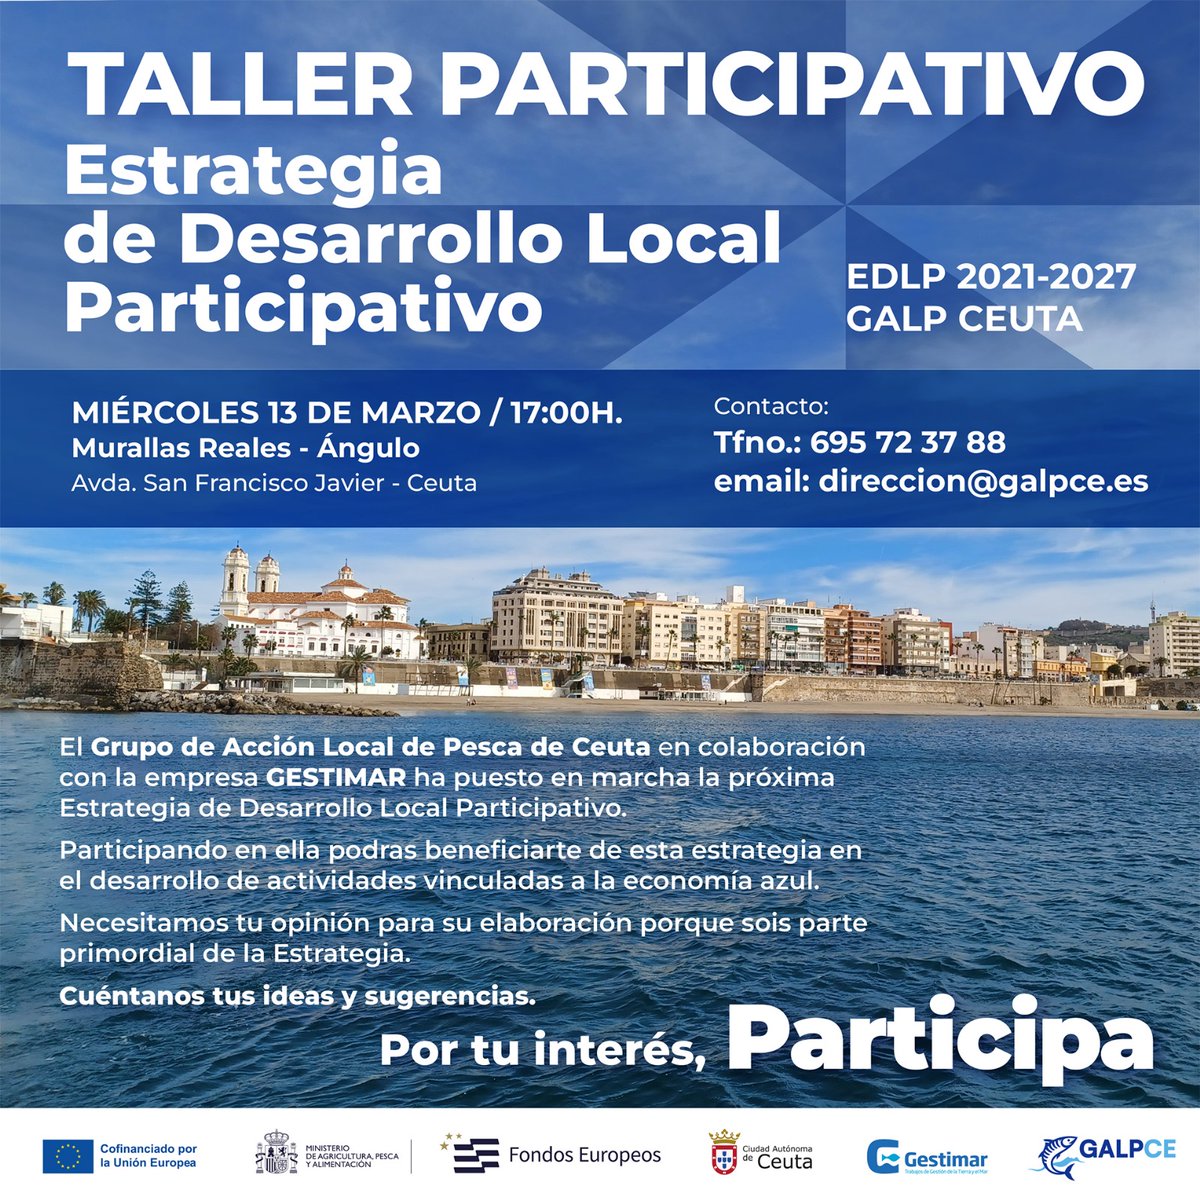 🌊 Únete a crear el futuro marino de Ceuta con nuestra Estrategia de Desarrollo Local Participativo. Tu opinión cuenta. 🐟🗣️ Participa el 13 de marzo a las 17:00 en Murallas Reales - Ángulo. ¡No faltes! #Turismo #EconomíaAzul #Ceuta